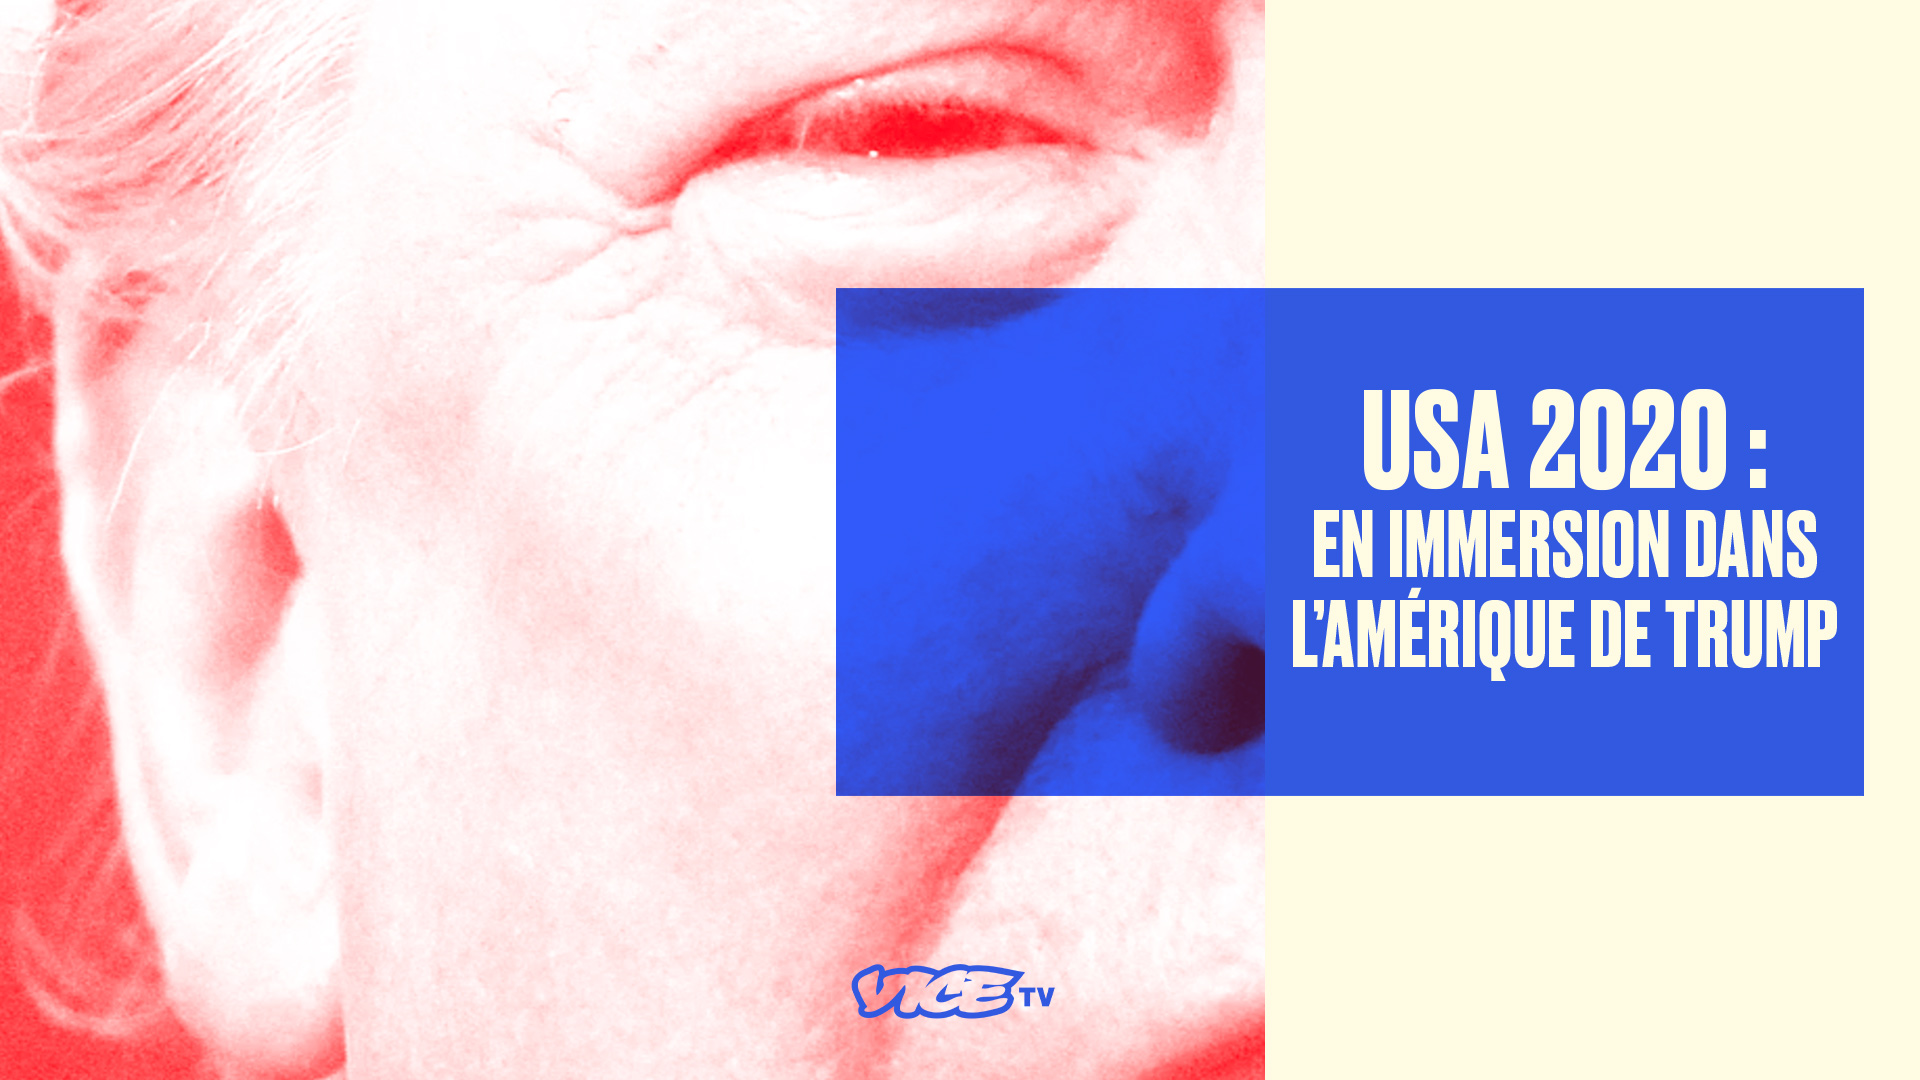 USA 2020: En immersion dans l'Amérique de Trump, dés demain sur VICE TV